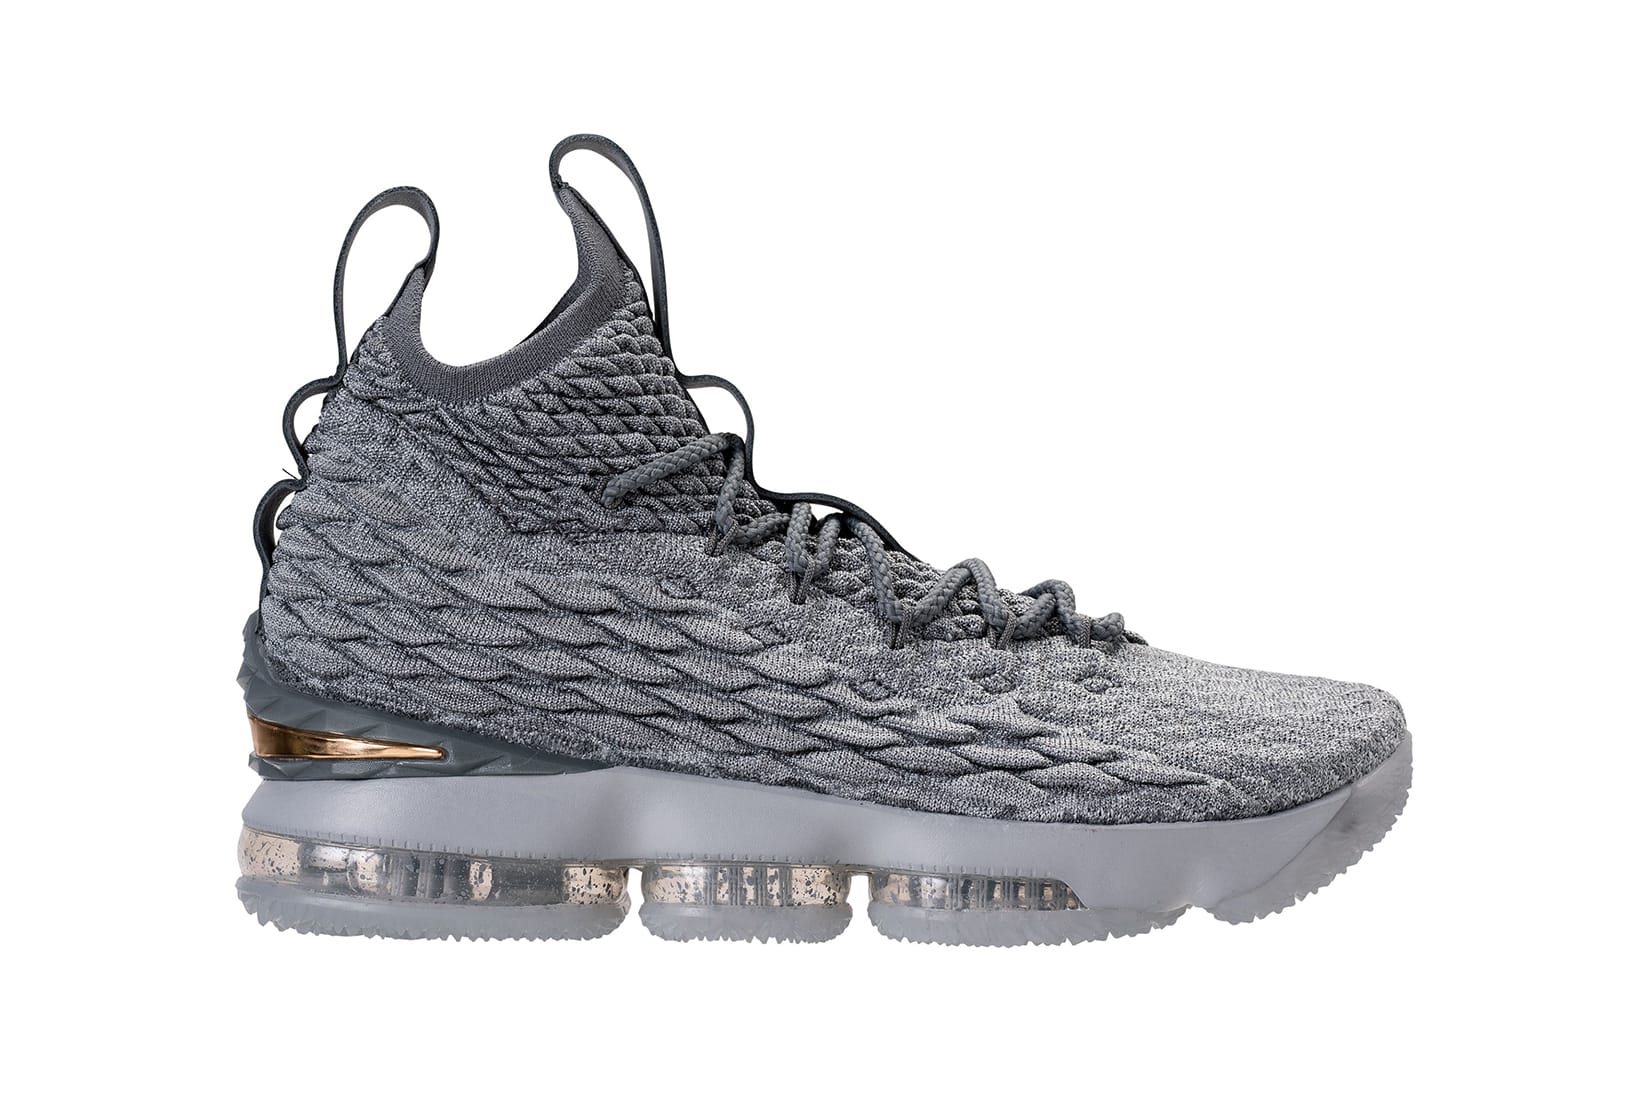 Nike LeBron 15 in Cool Grey \u0026 Metallic 